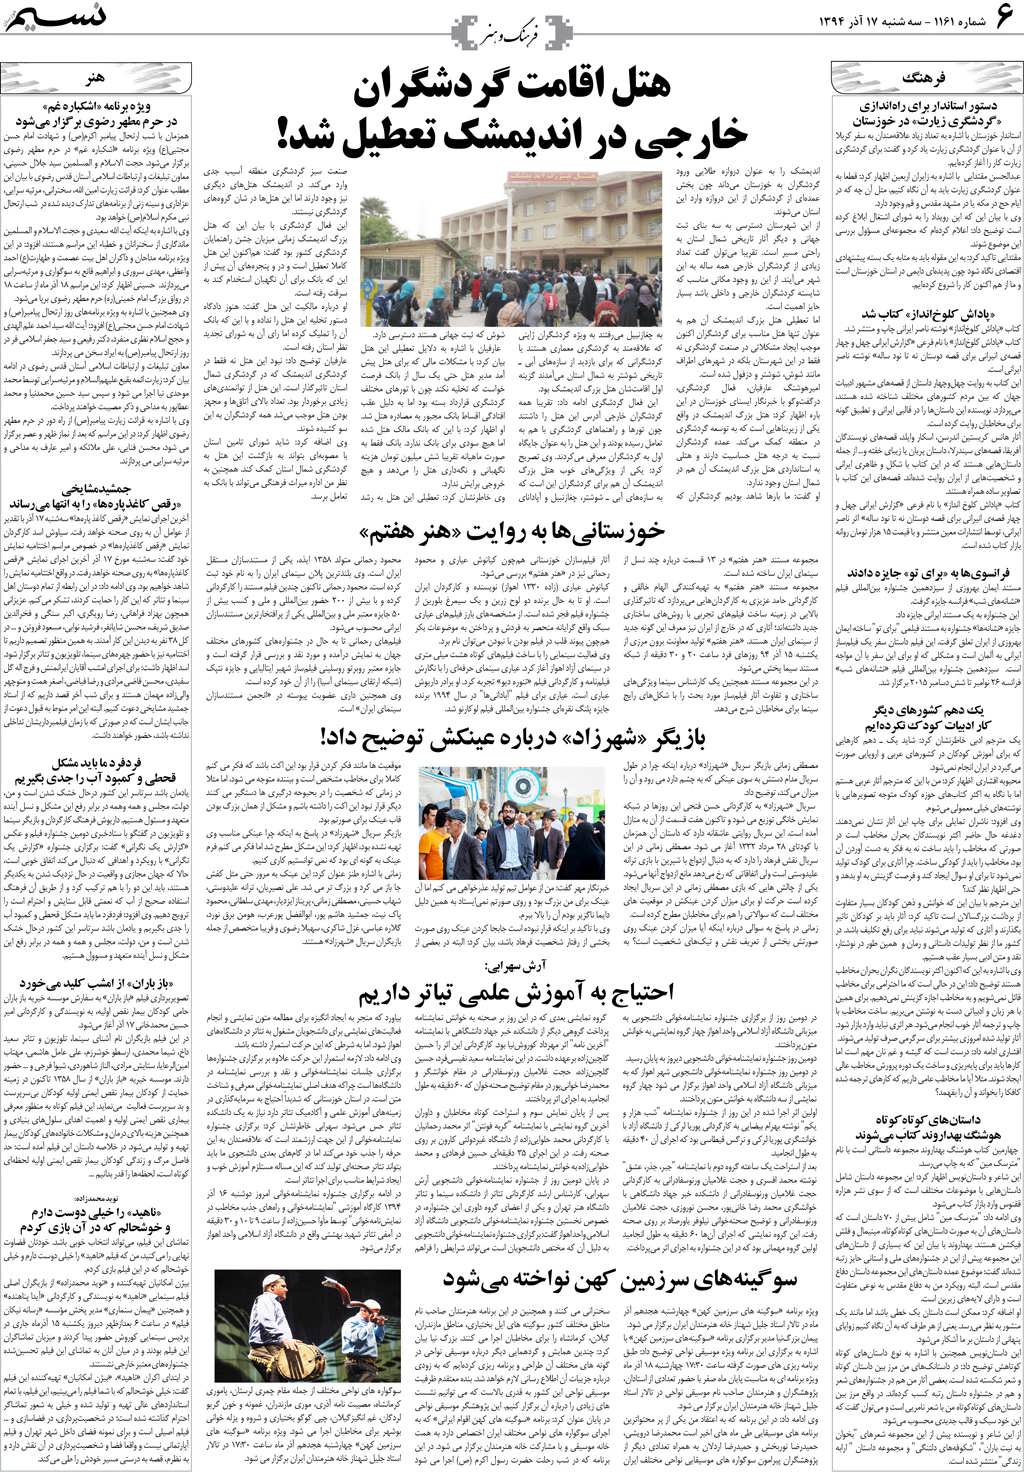 صفحه فرهنگ و هنر روزنامه نسیم شماره 1161